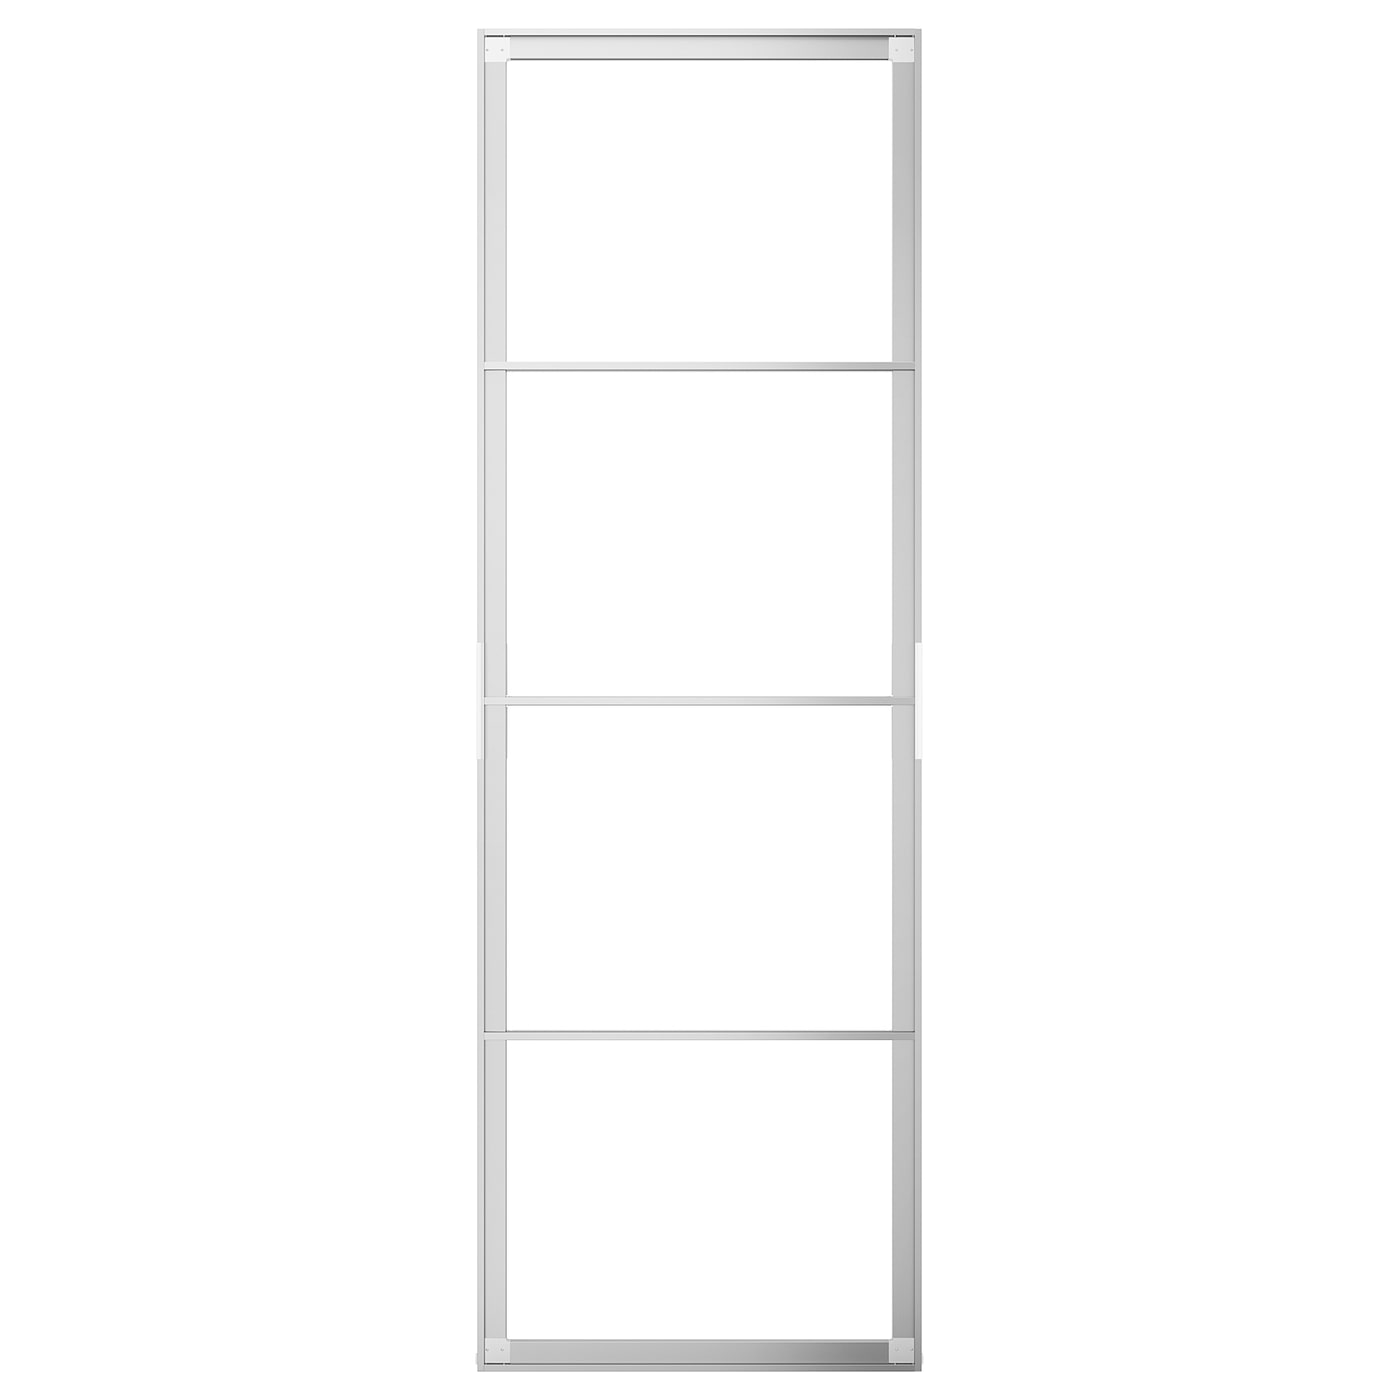 Пара рам раздвижных дверей - SKYTTA IKEA/ СКЮТТА ИКЕА, 77х231 см, серебрянный